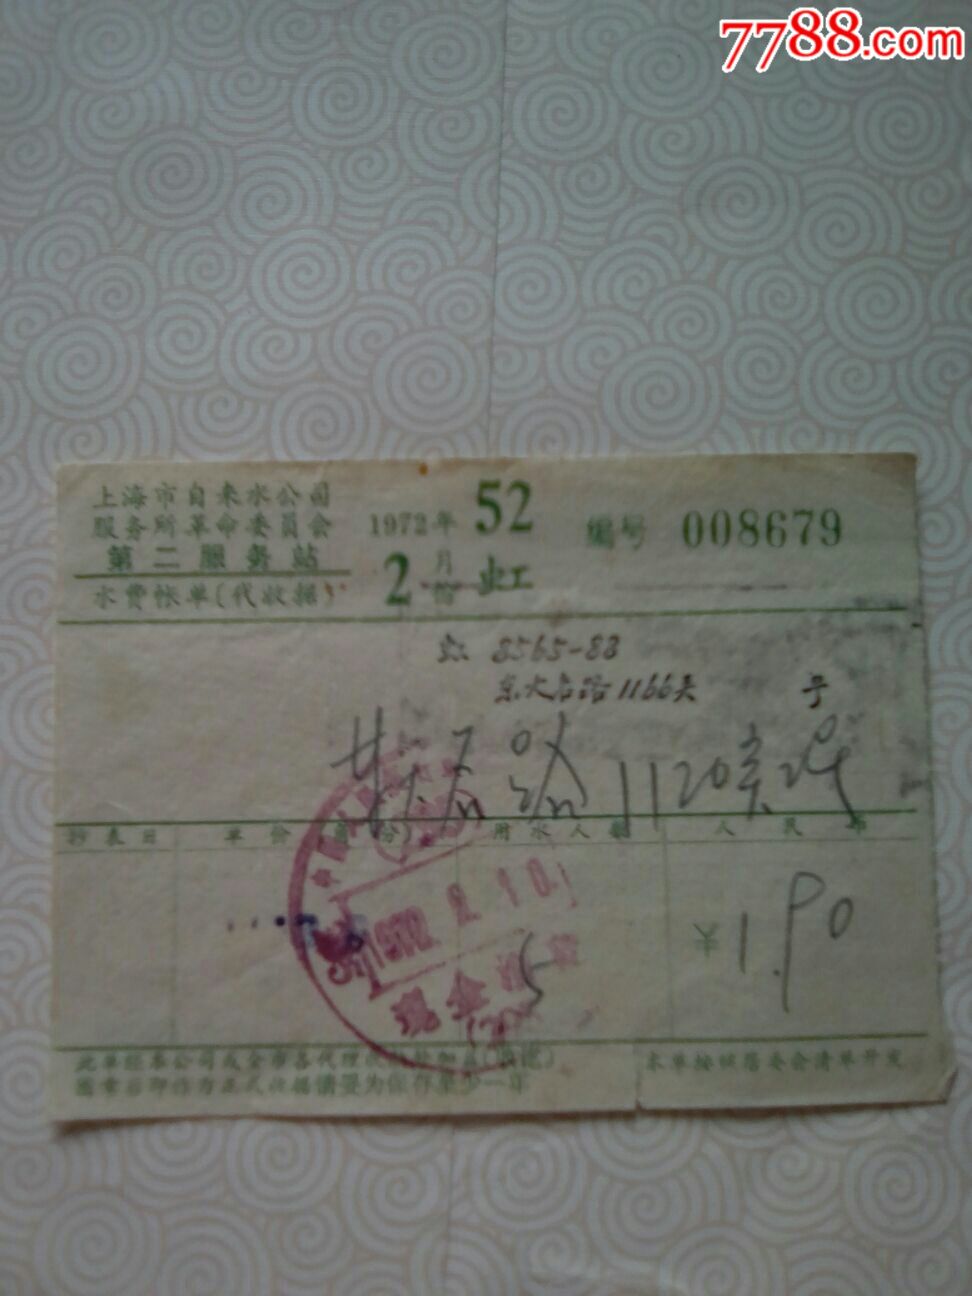 上海市自来水公司水费账单(3张虹)